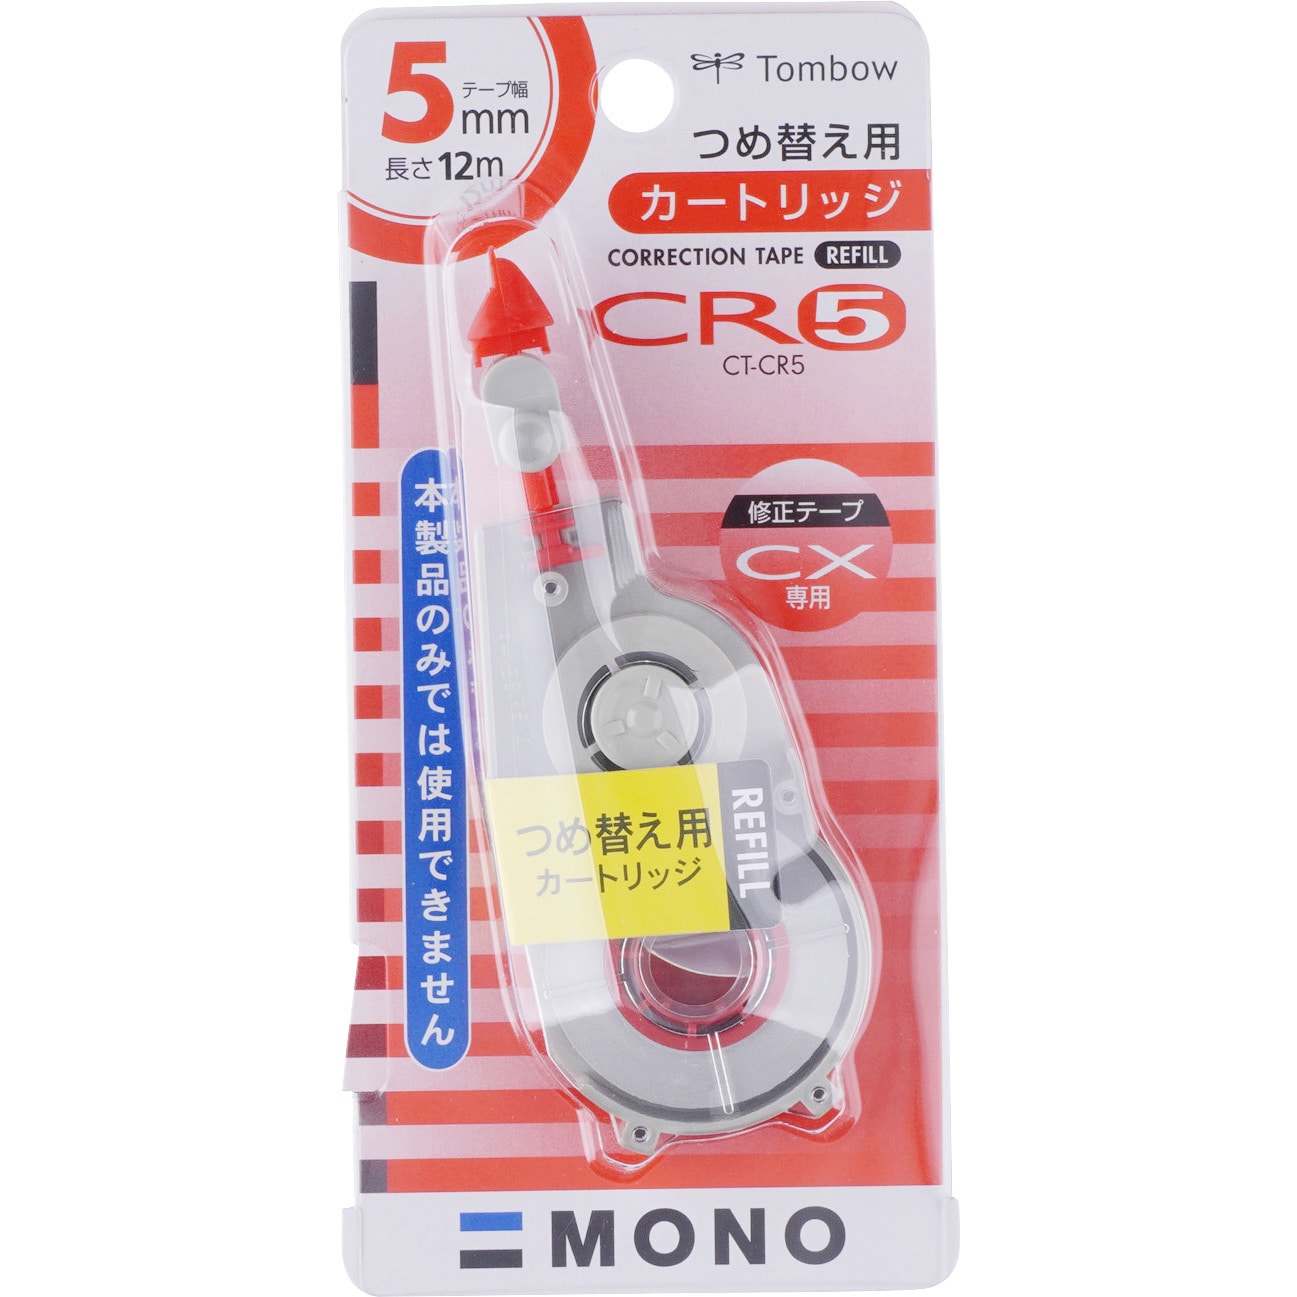 修正テープ モノCX用 カートリッジ CT-CR